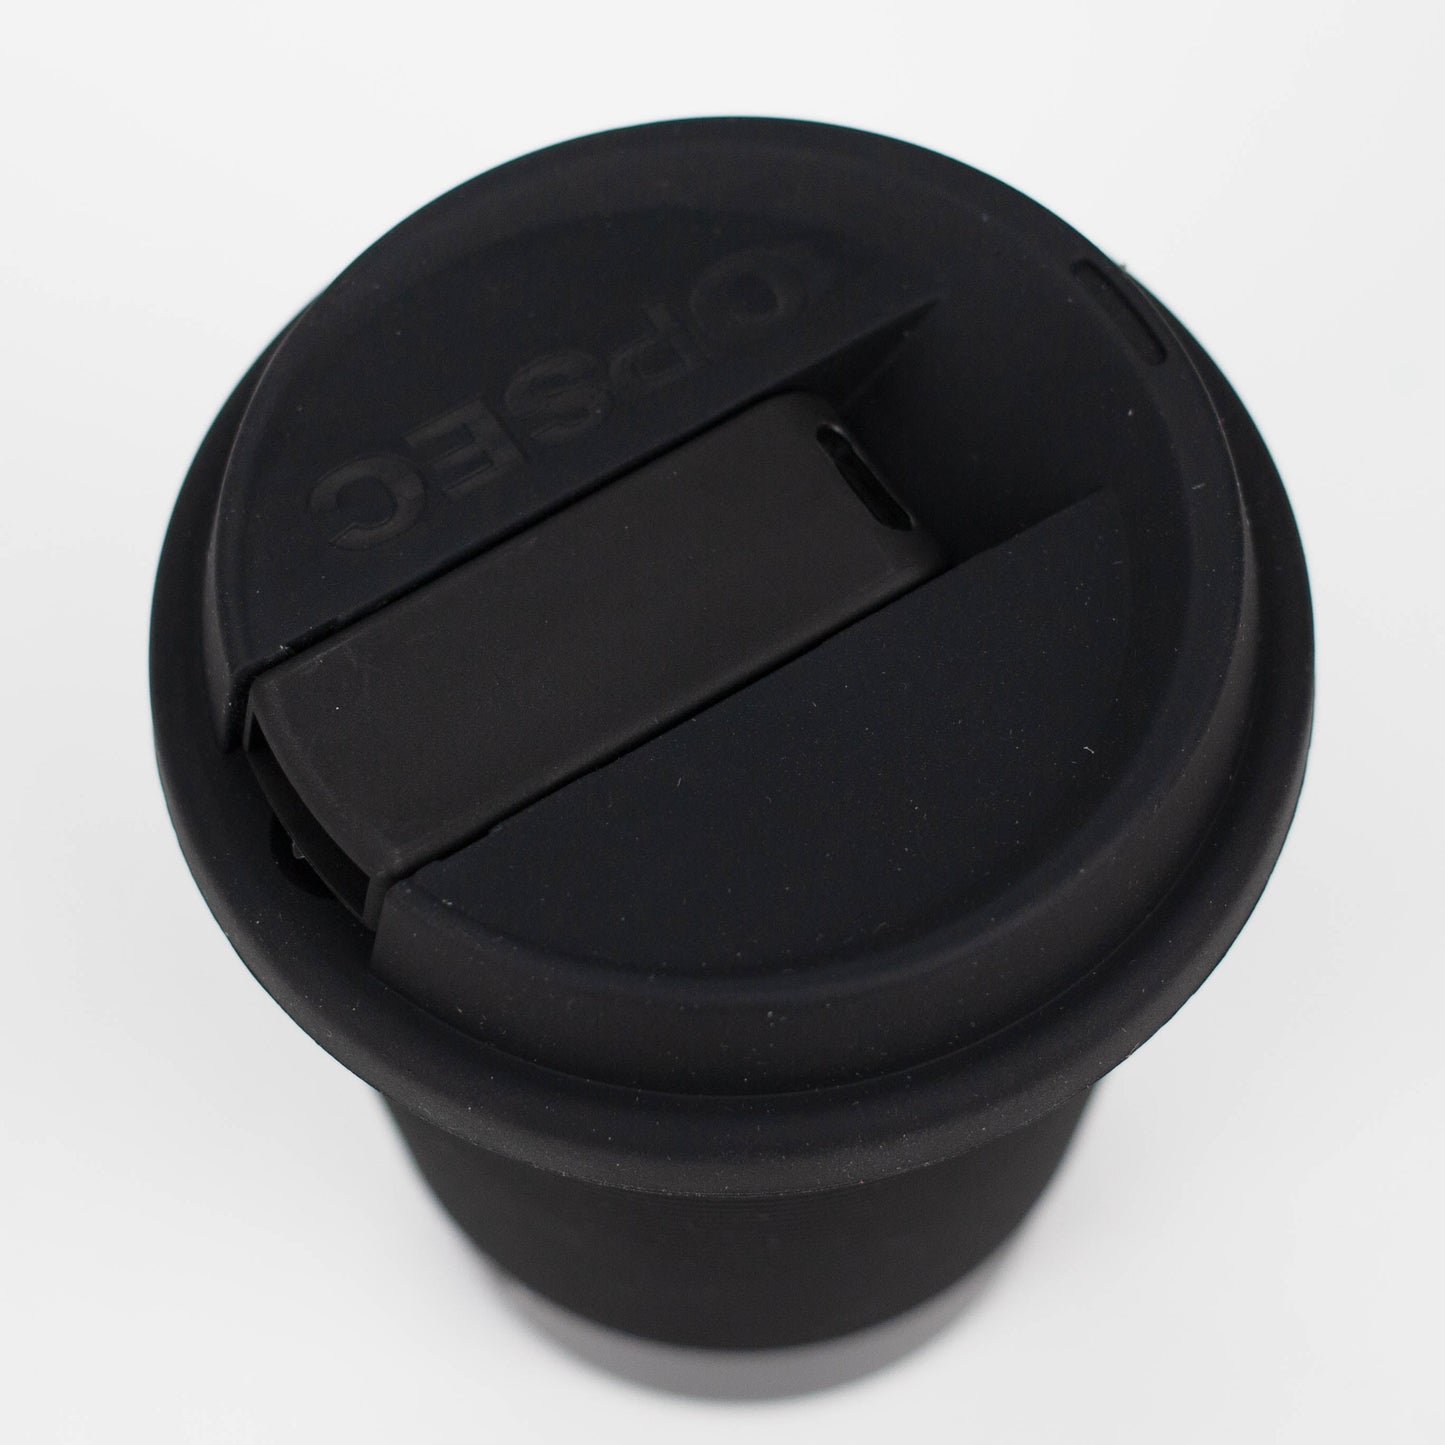 OPSEC Mug | Stealth Bubbler Bundle w/ Grinder and Extra Ceramic Bowl_1